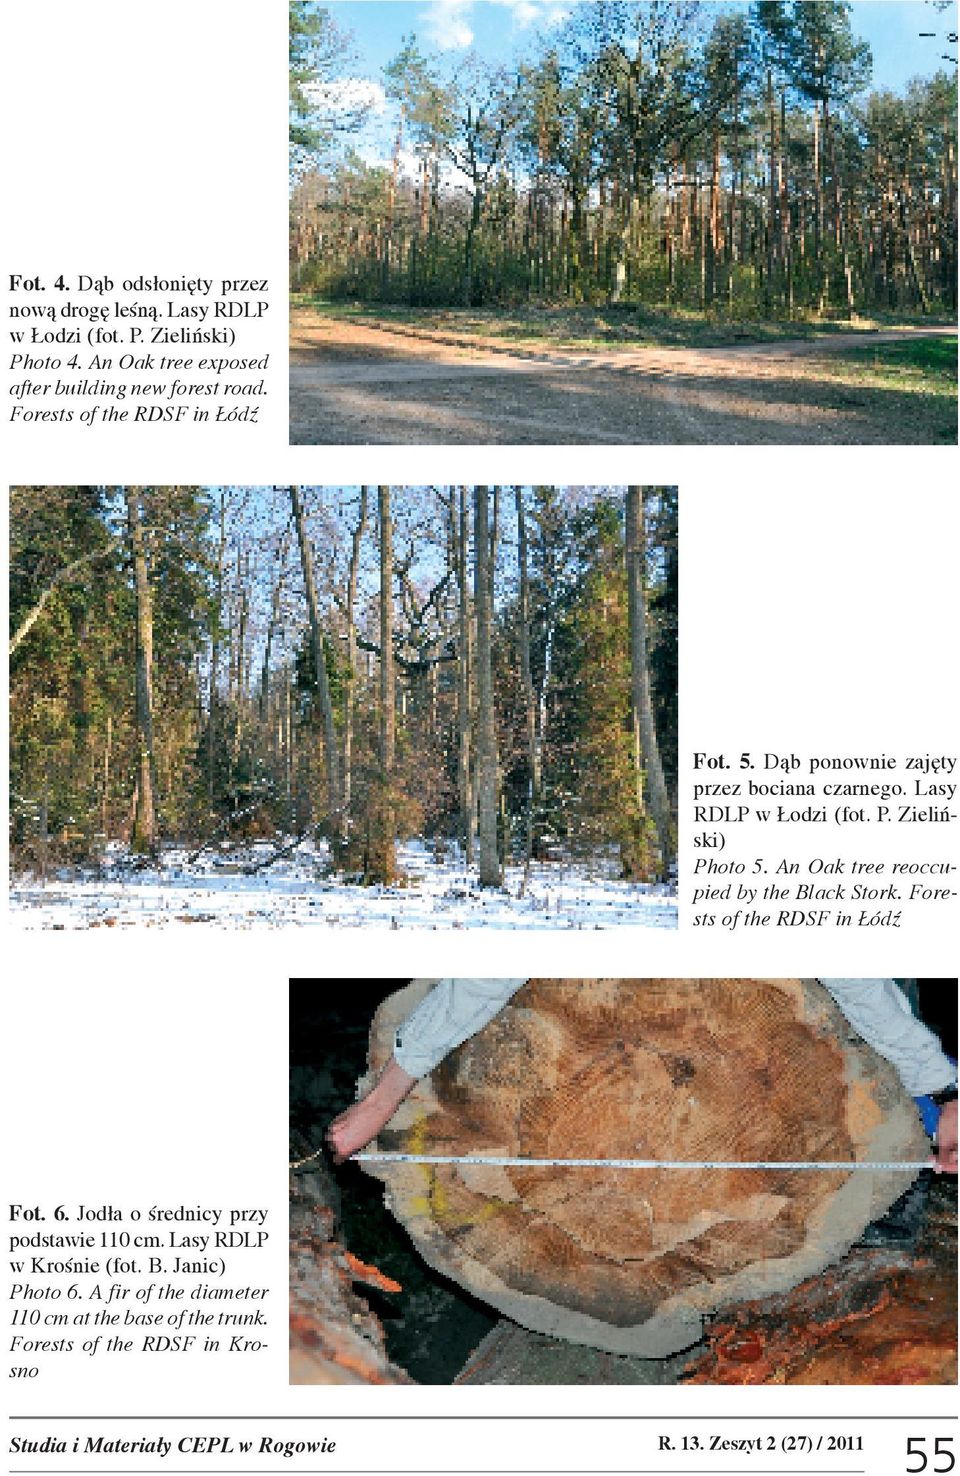 An Oak tree reoccupied by the Black Stork. Forests of the RDSF in ódÿ Fot. 6. Jod³a o œrednicy przy podstawie 110 cm. Lasy RDLP w Kroœnie (fot. B. Janic) Photo 6.